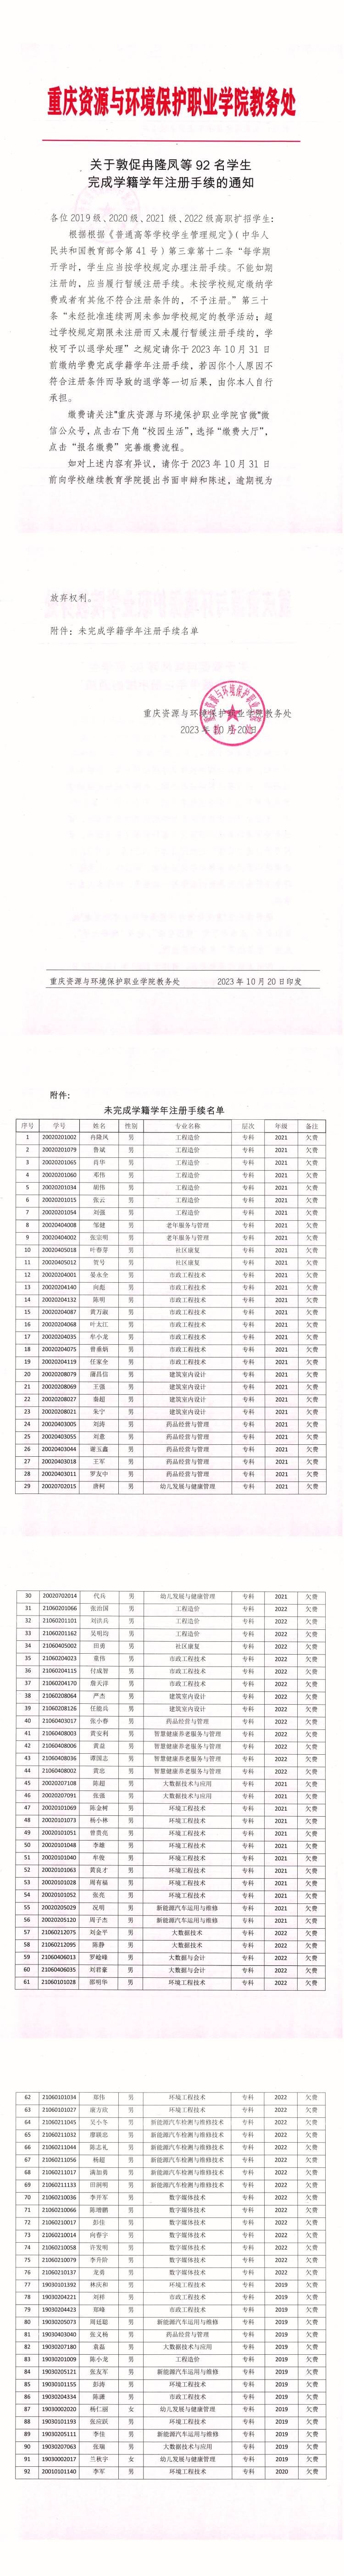 关于敦促冉隆凤等92名学生完成学籍学年注册手续的通知 (2).jpg